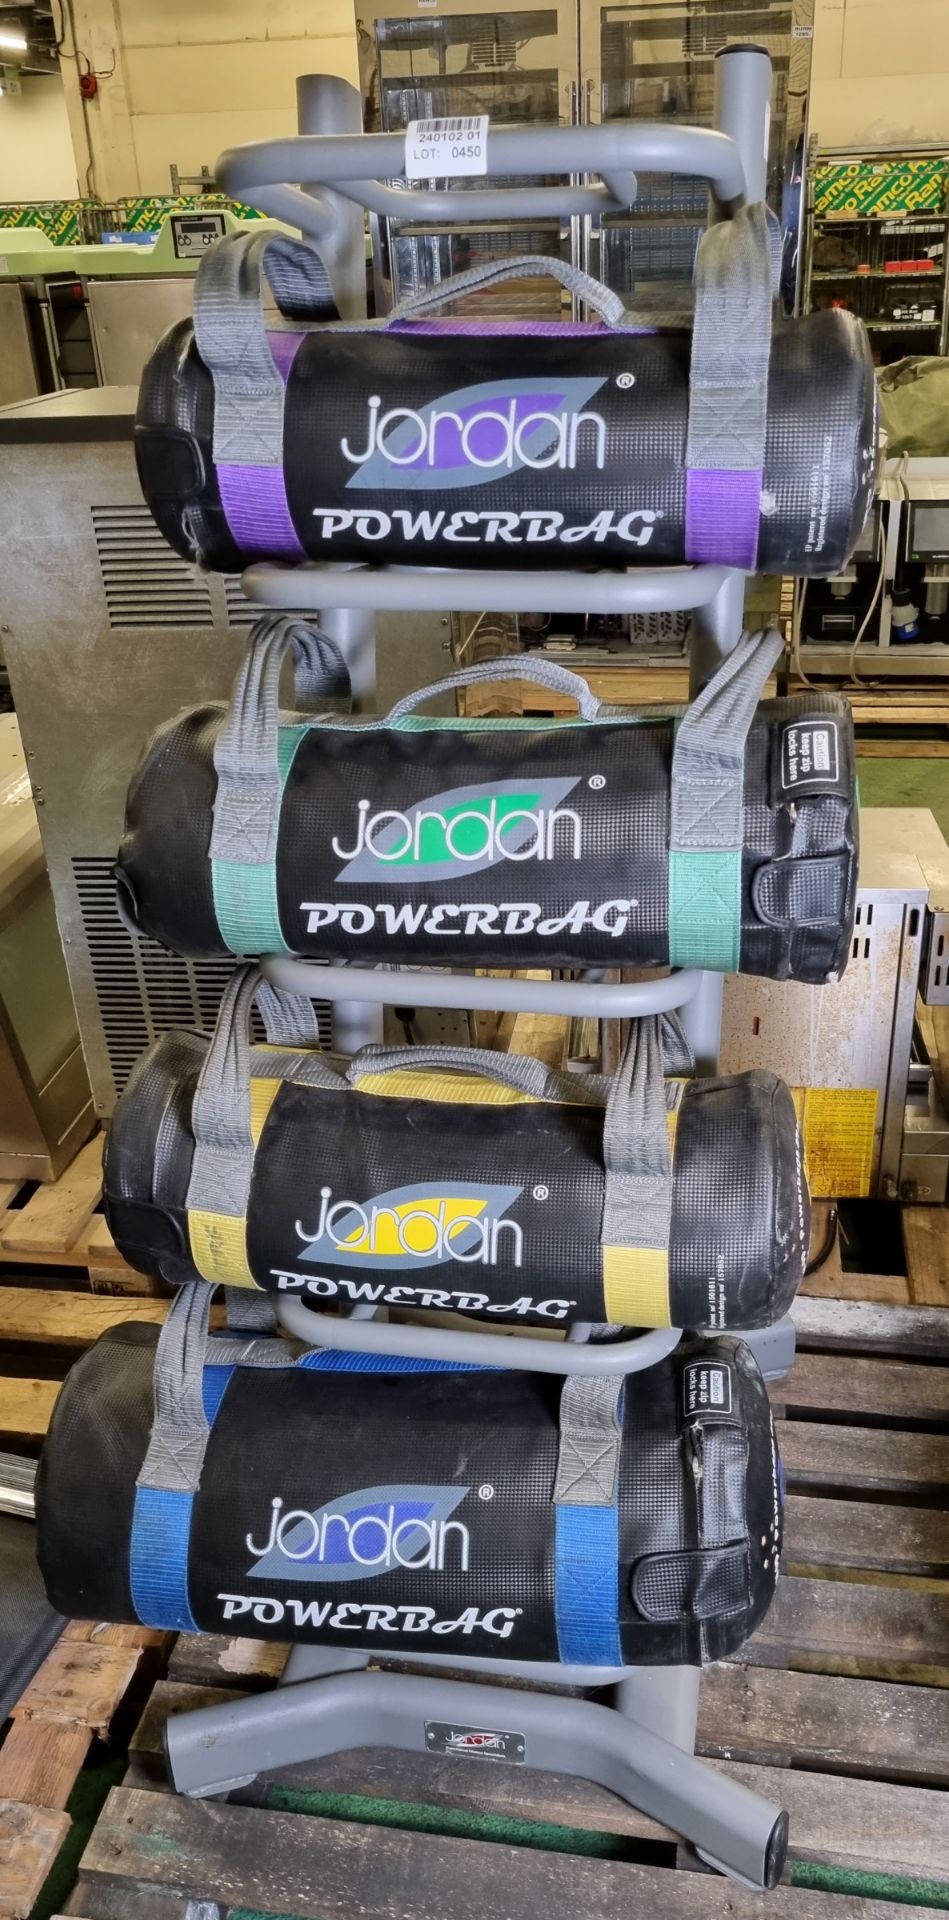 Jordan Powerbag rack - 5,10,15,20kg weights